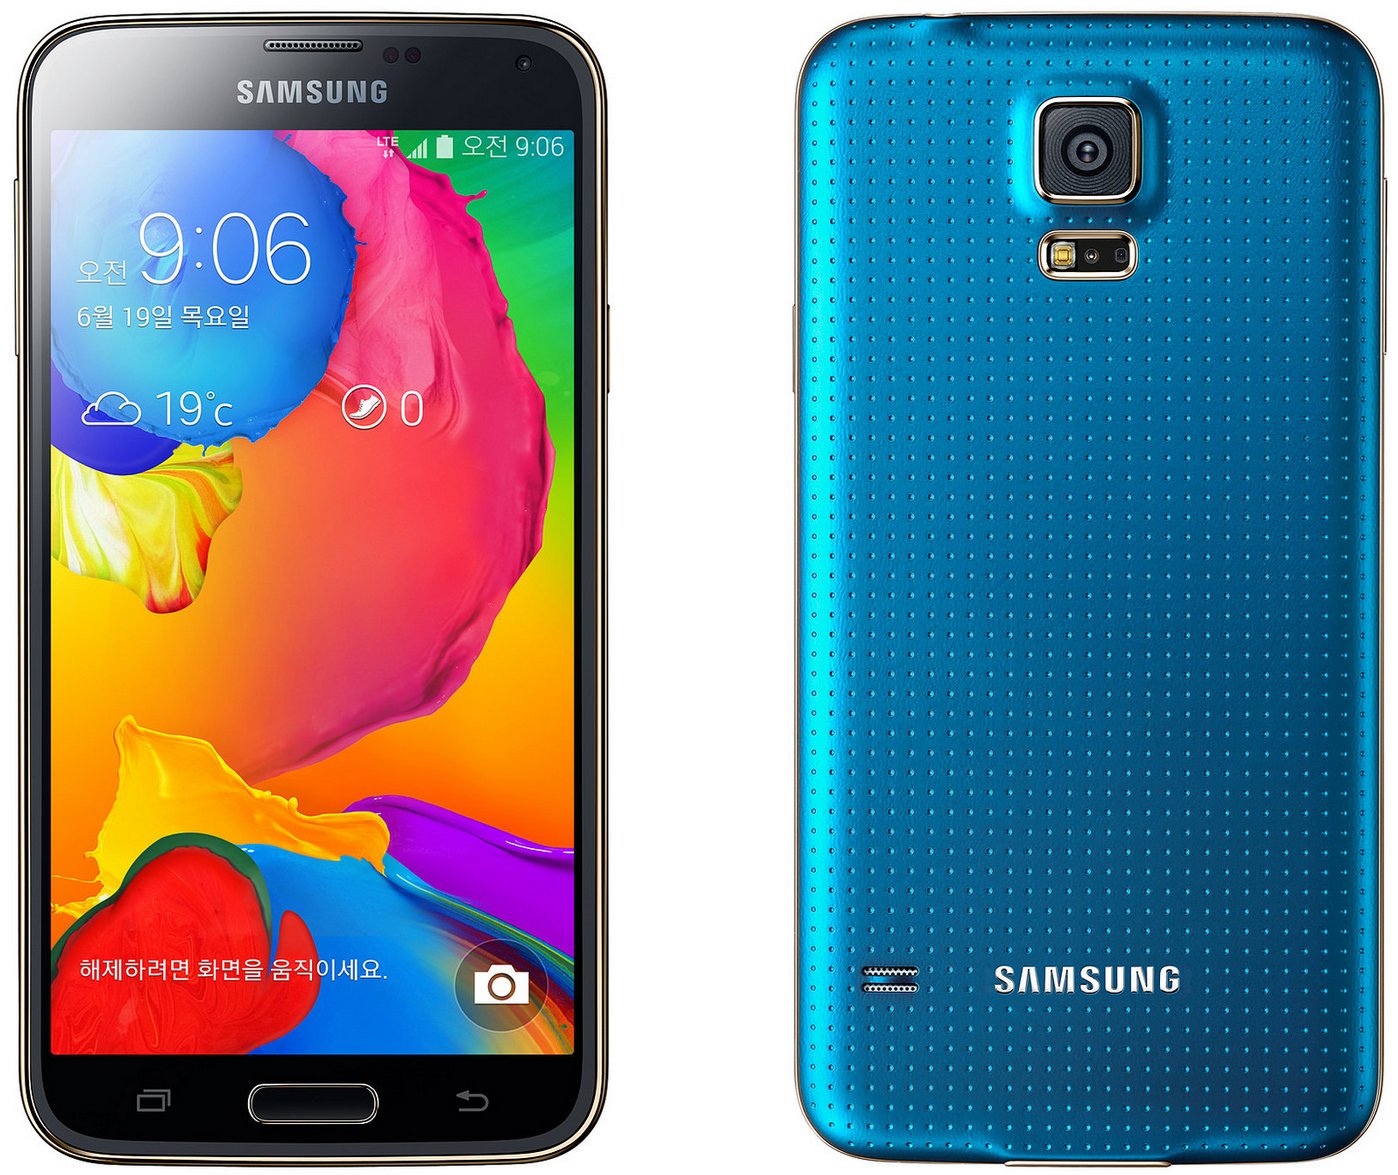 Samsung Galaxy S5 : fautil lacheter avec ou sans abonnement ?  Meilleur Mobile